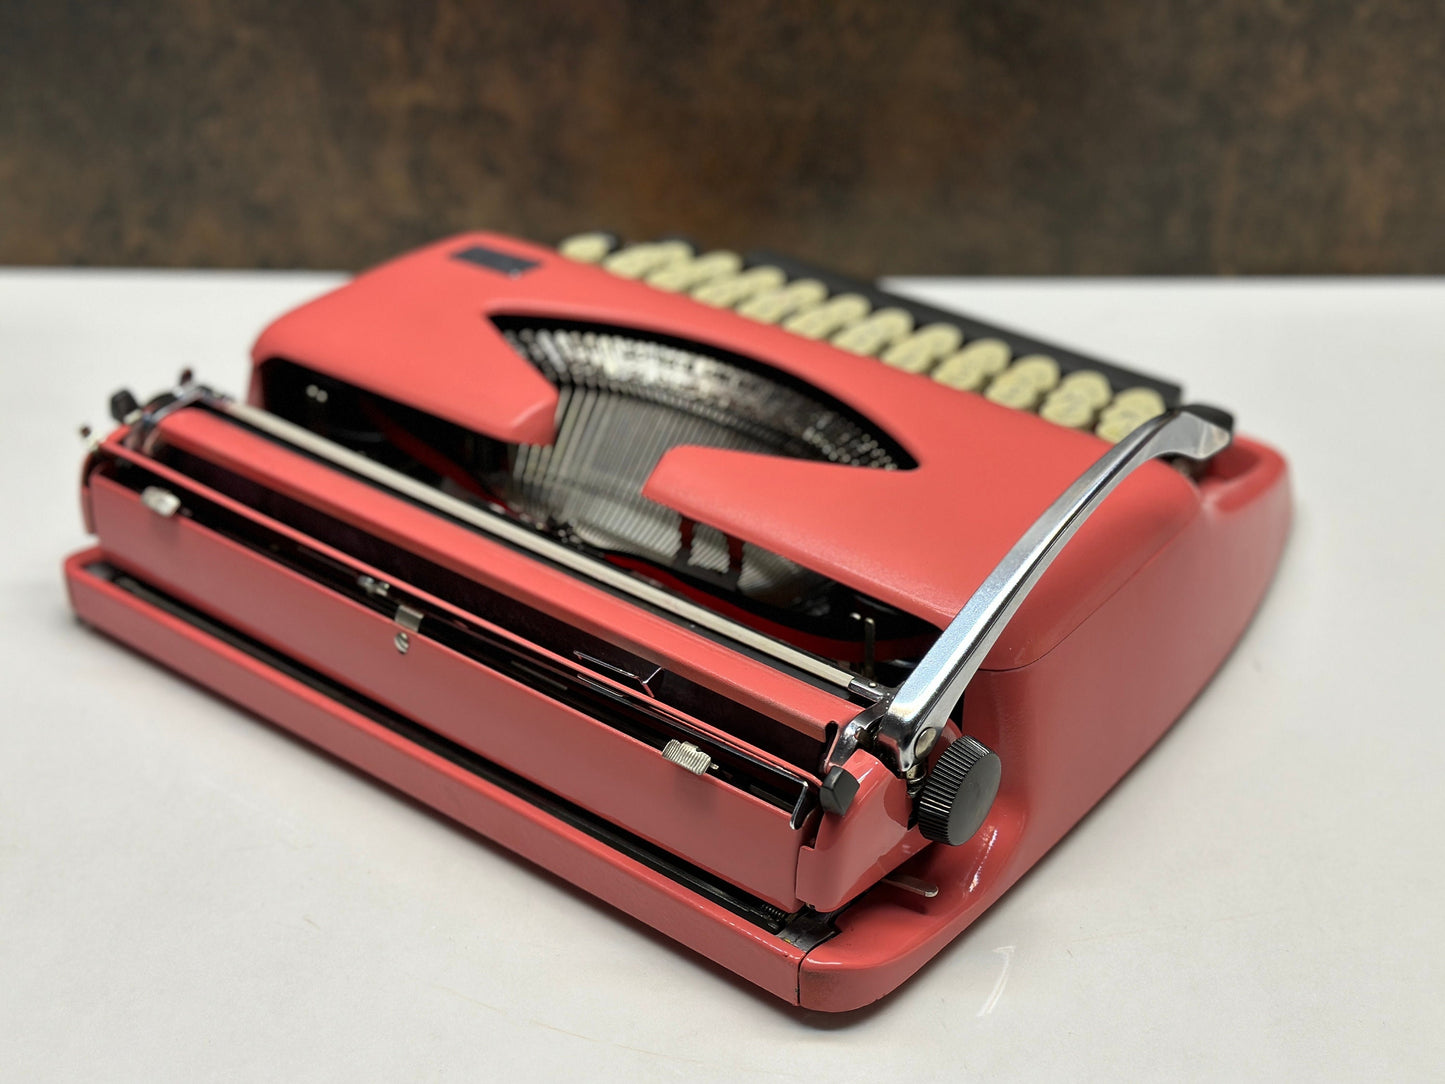 Adler Tippa Typewriter - 1960 - Vintage Mechanical Keyboard - Pink Typewriter,typewriter working